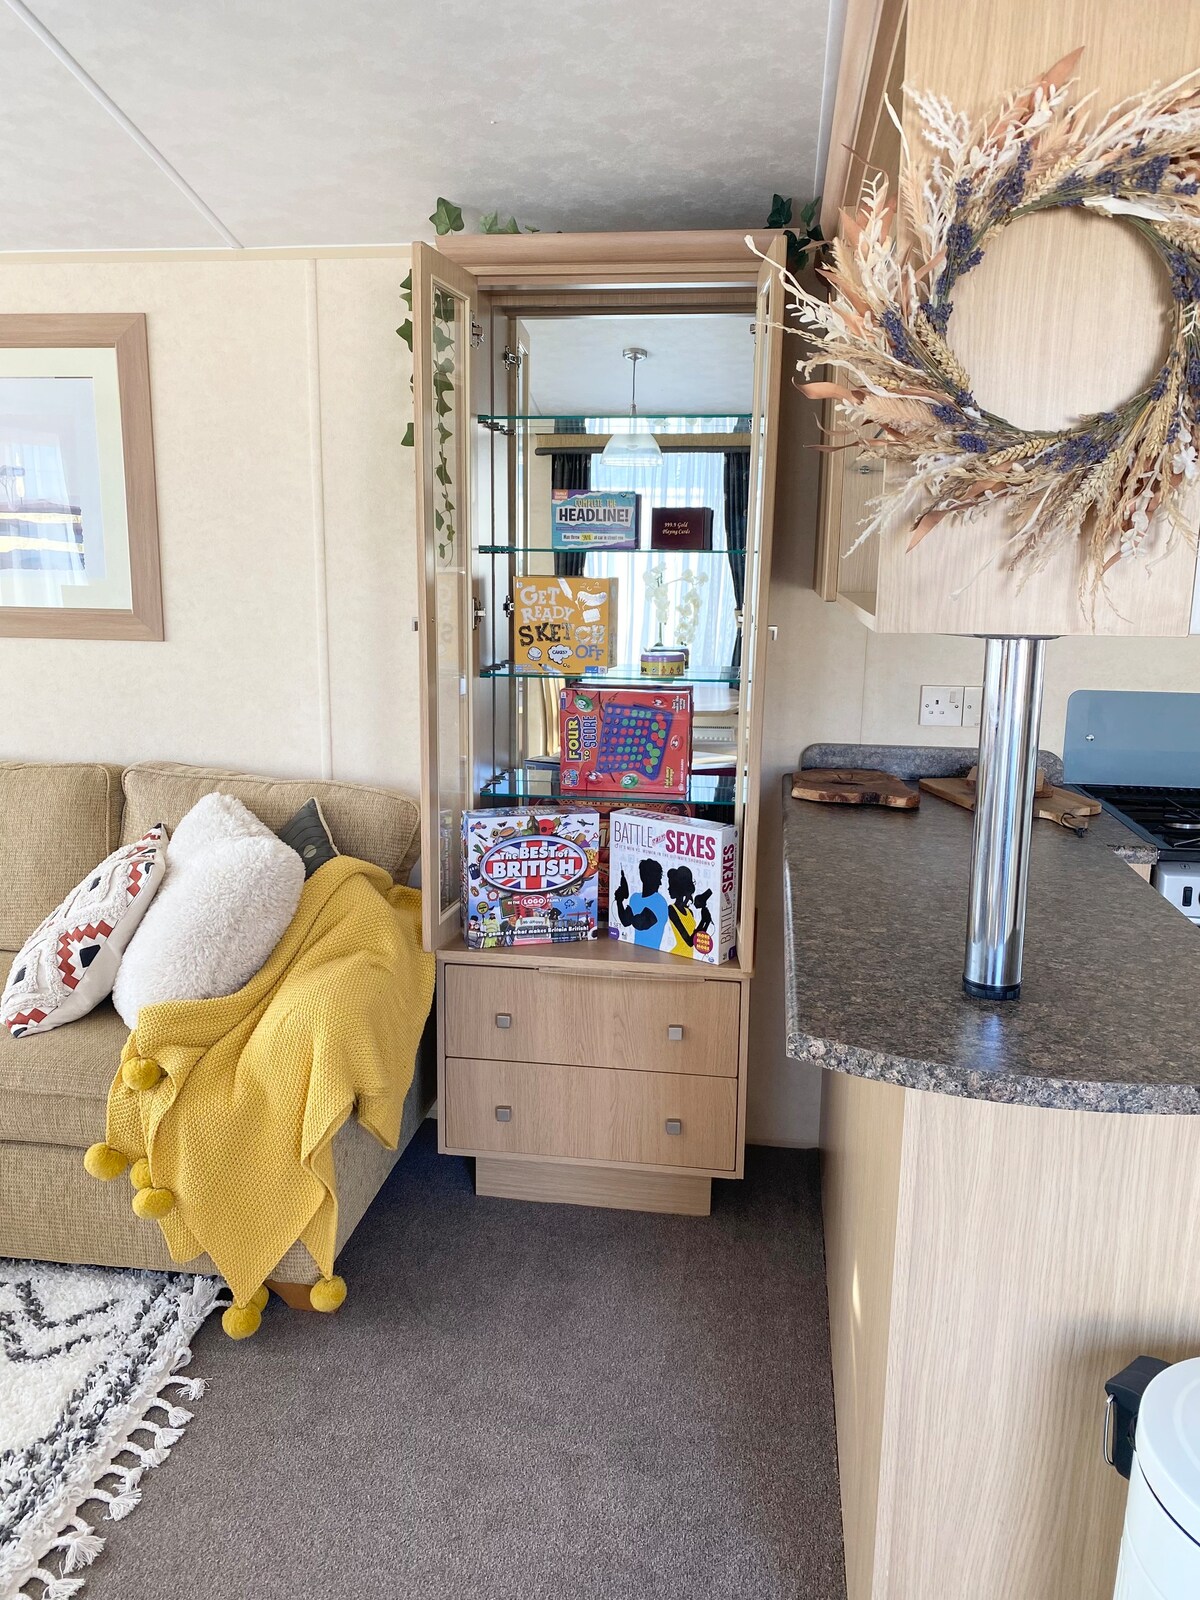 Spacious 2-bedroom Caravan by the seaside